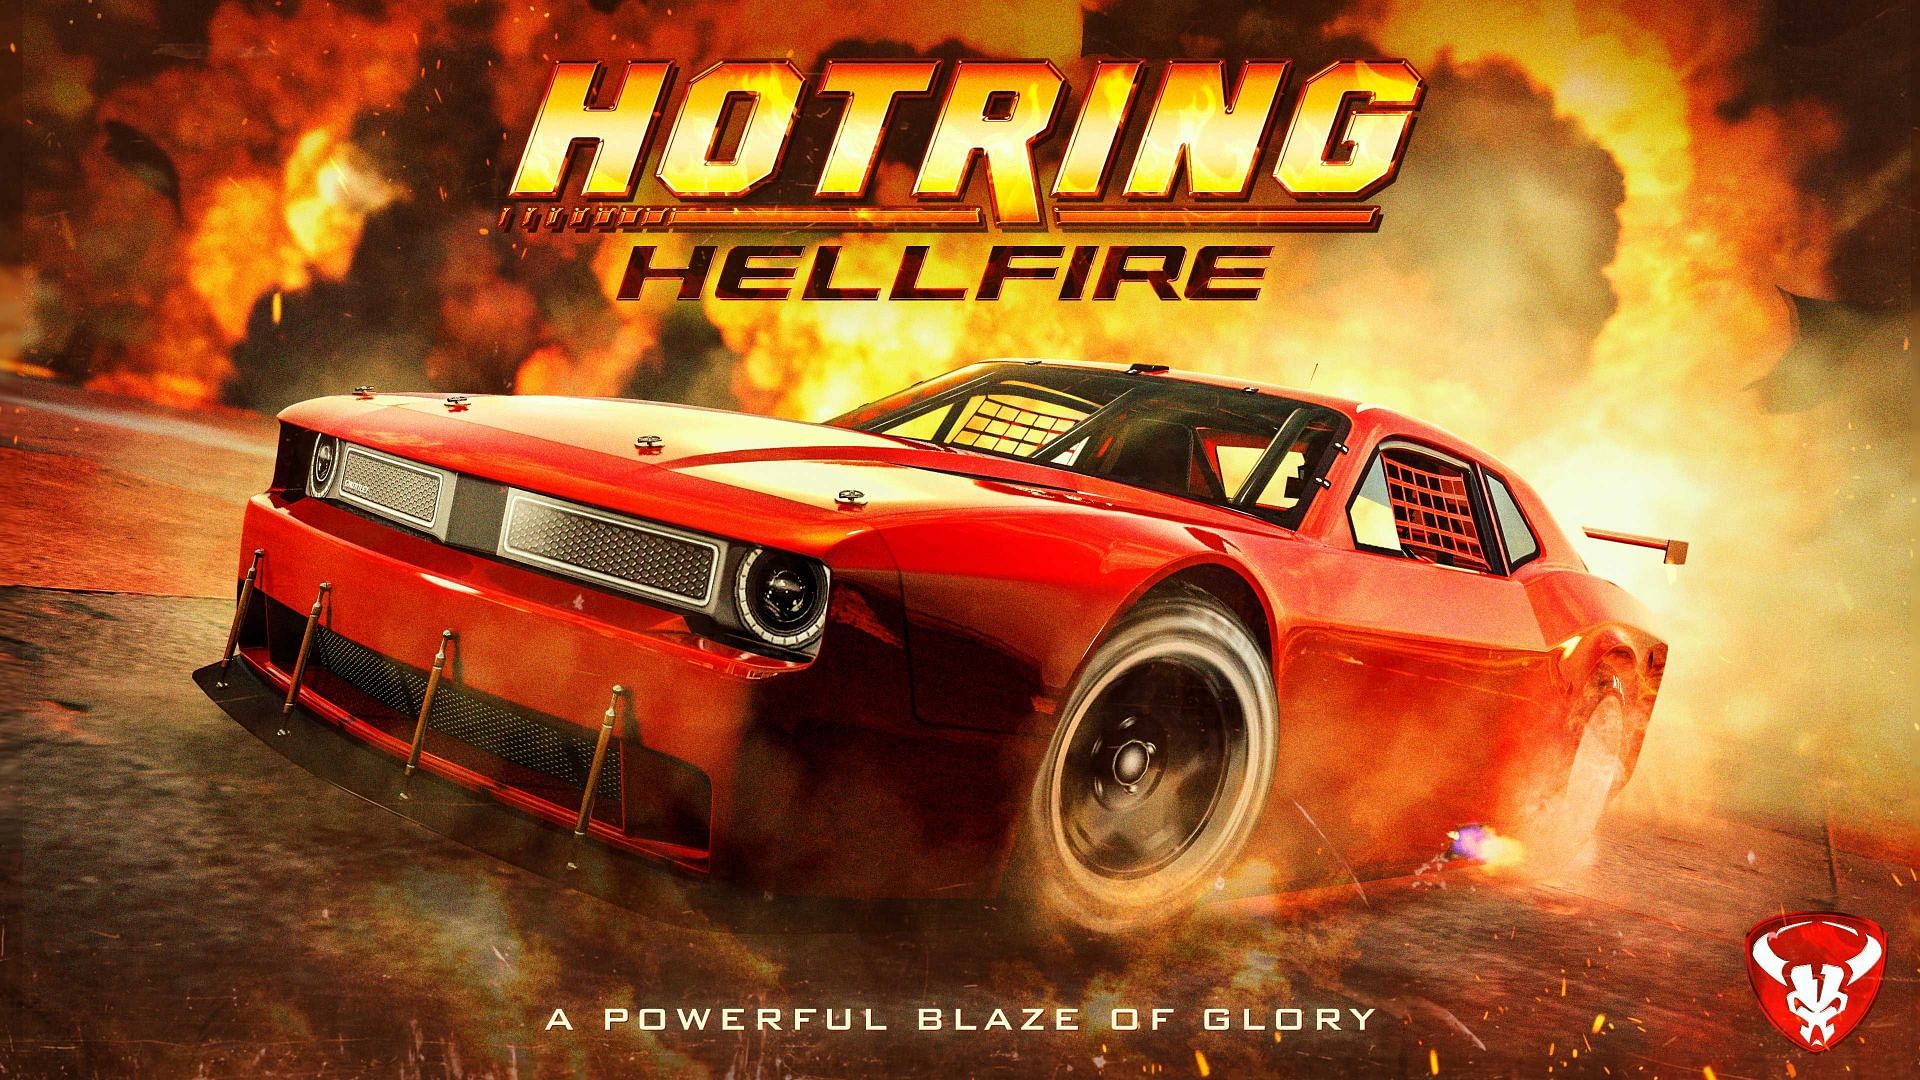 An official Bravado Hotring Hellfire advert (Image via Rockstar Games)